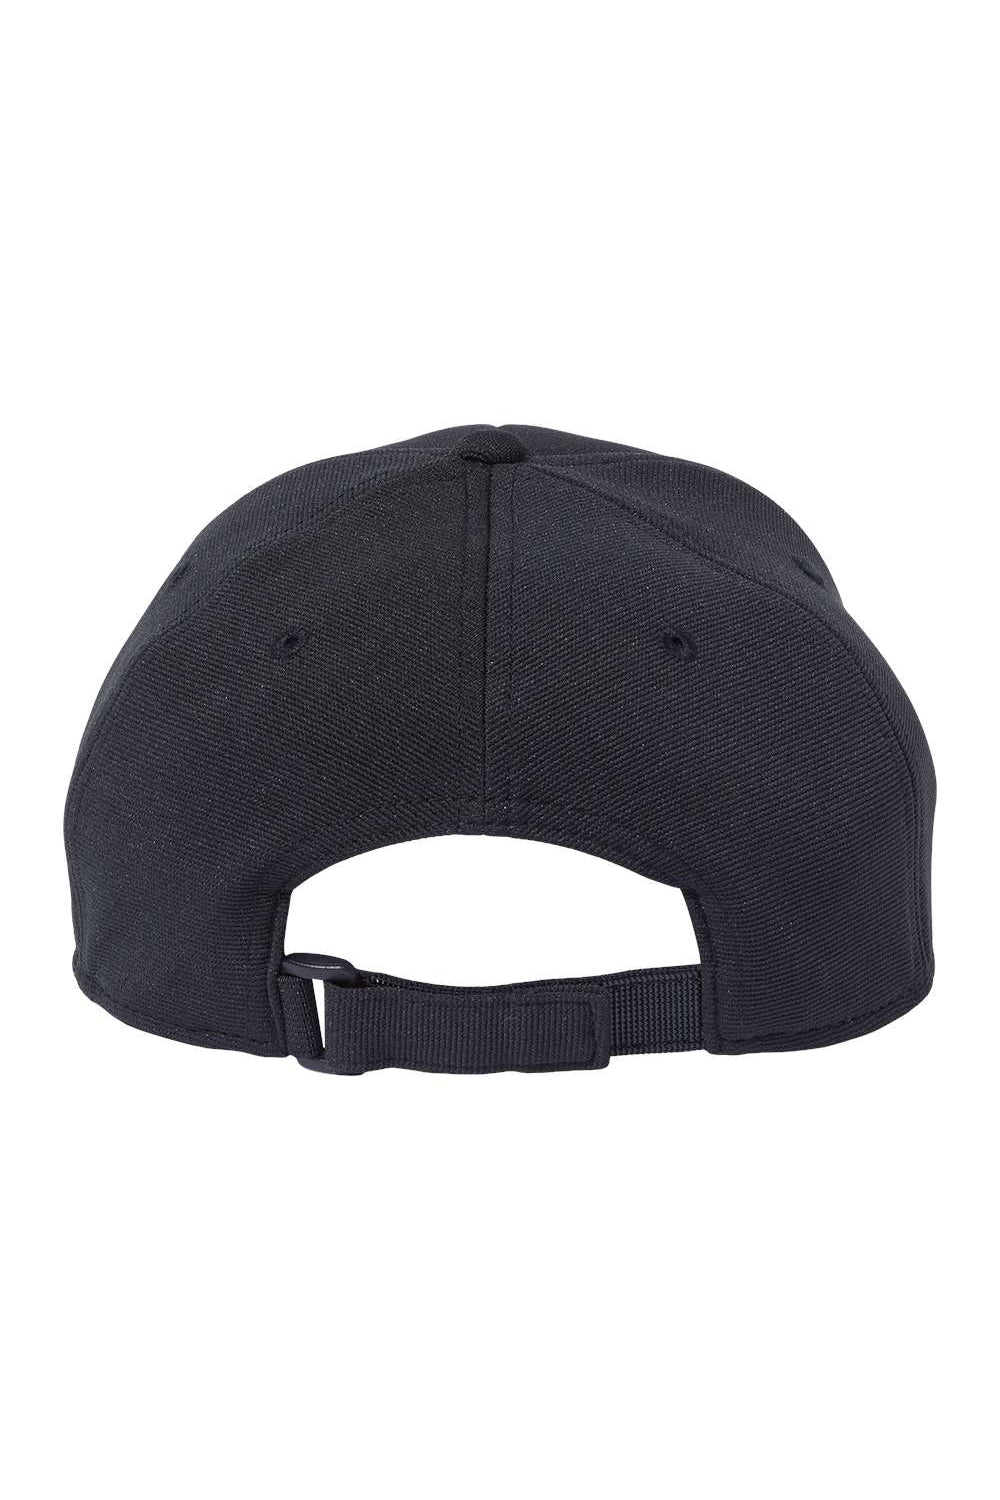 Atlantis Headwear SAND Mens Sustainable Performance Adjustable Hat Black Flat Back